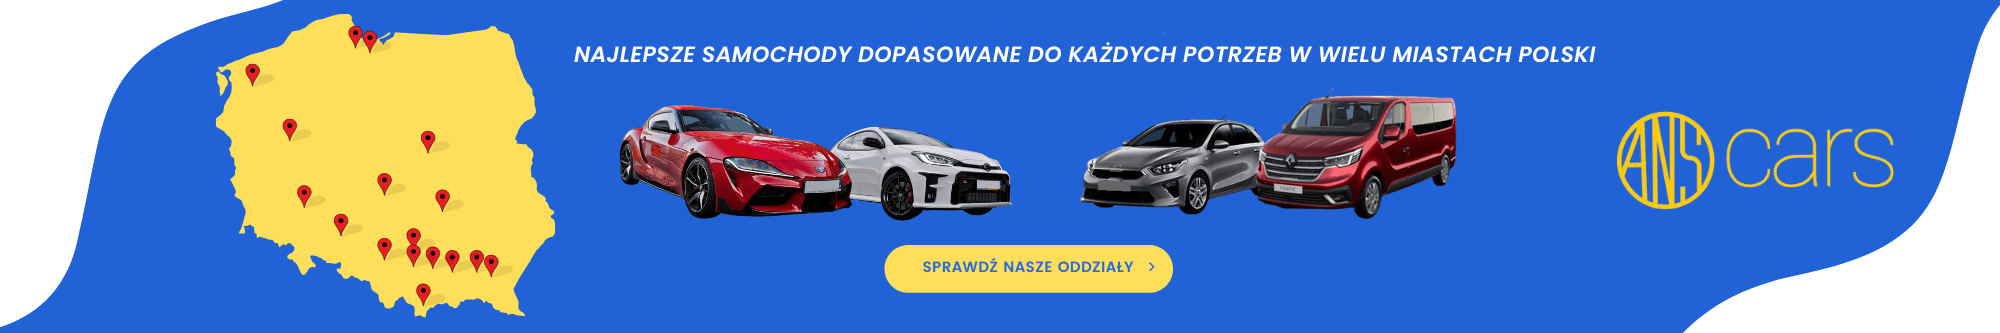 Wypożyczalnia samochodów Jarosław